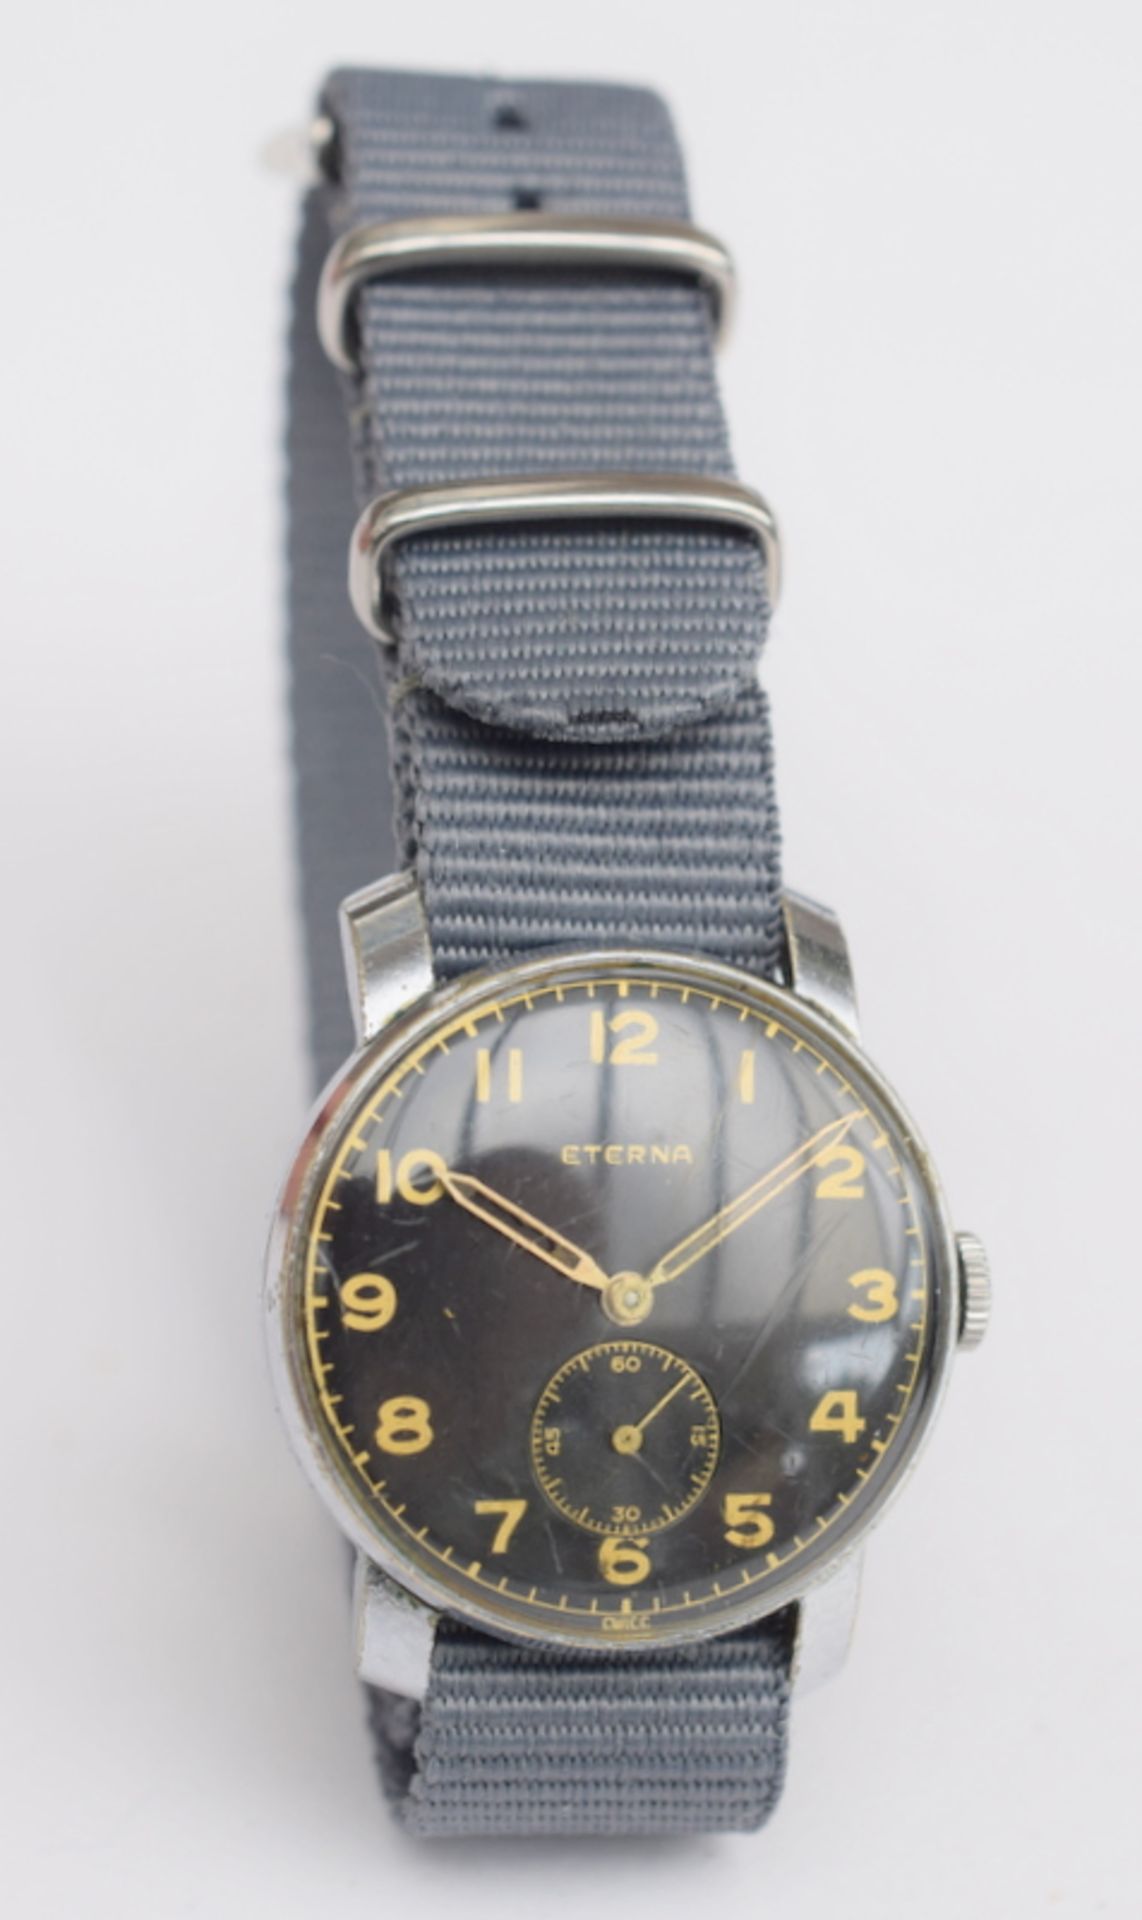 WW2 Era Eterna Dirty Dozen Style Wristwatch - Image 2 of 5